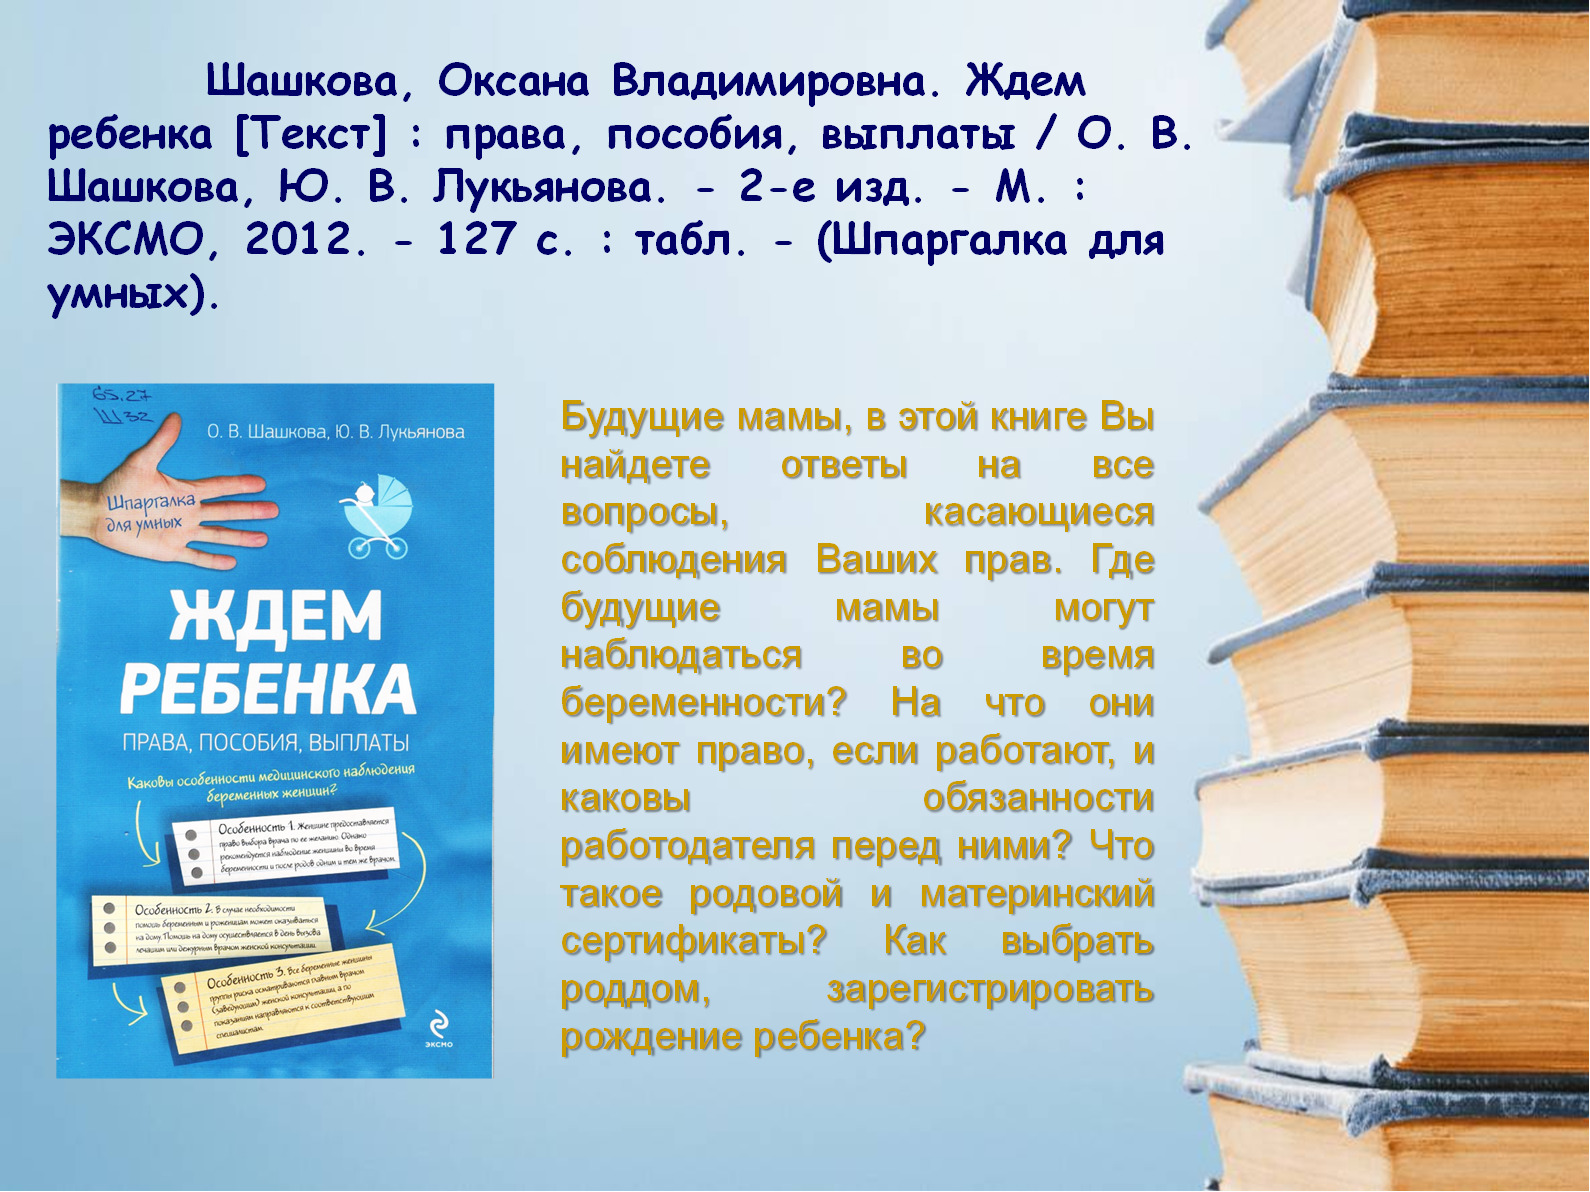 Текст о правах человека. Централизованная библиотечная система г. Барнаула. МБУ ЦБС Барнаула.